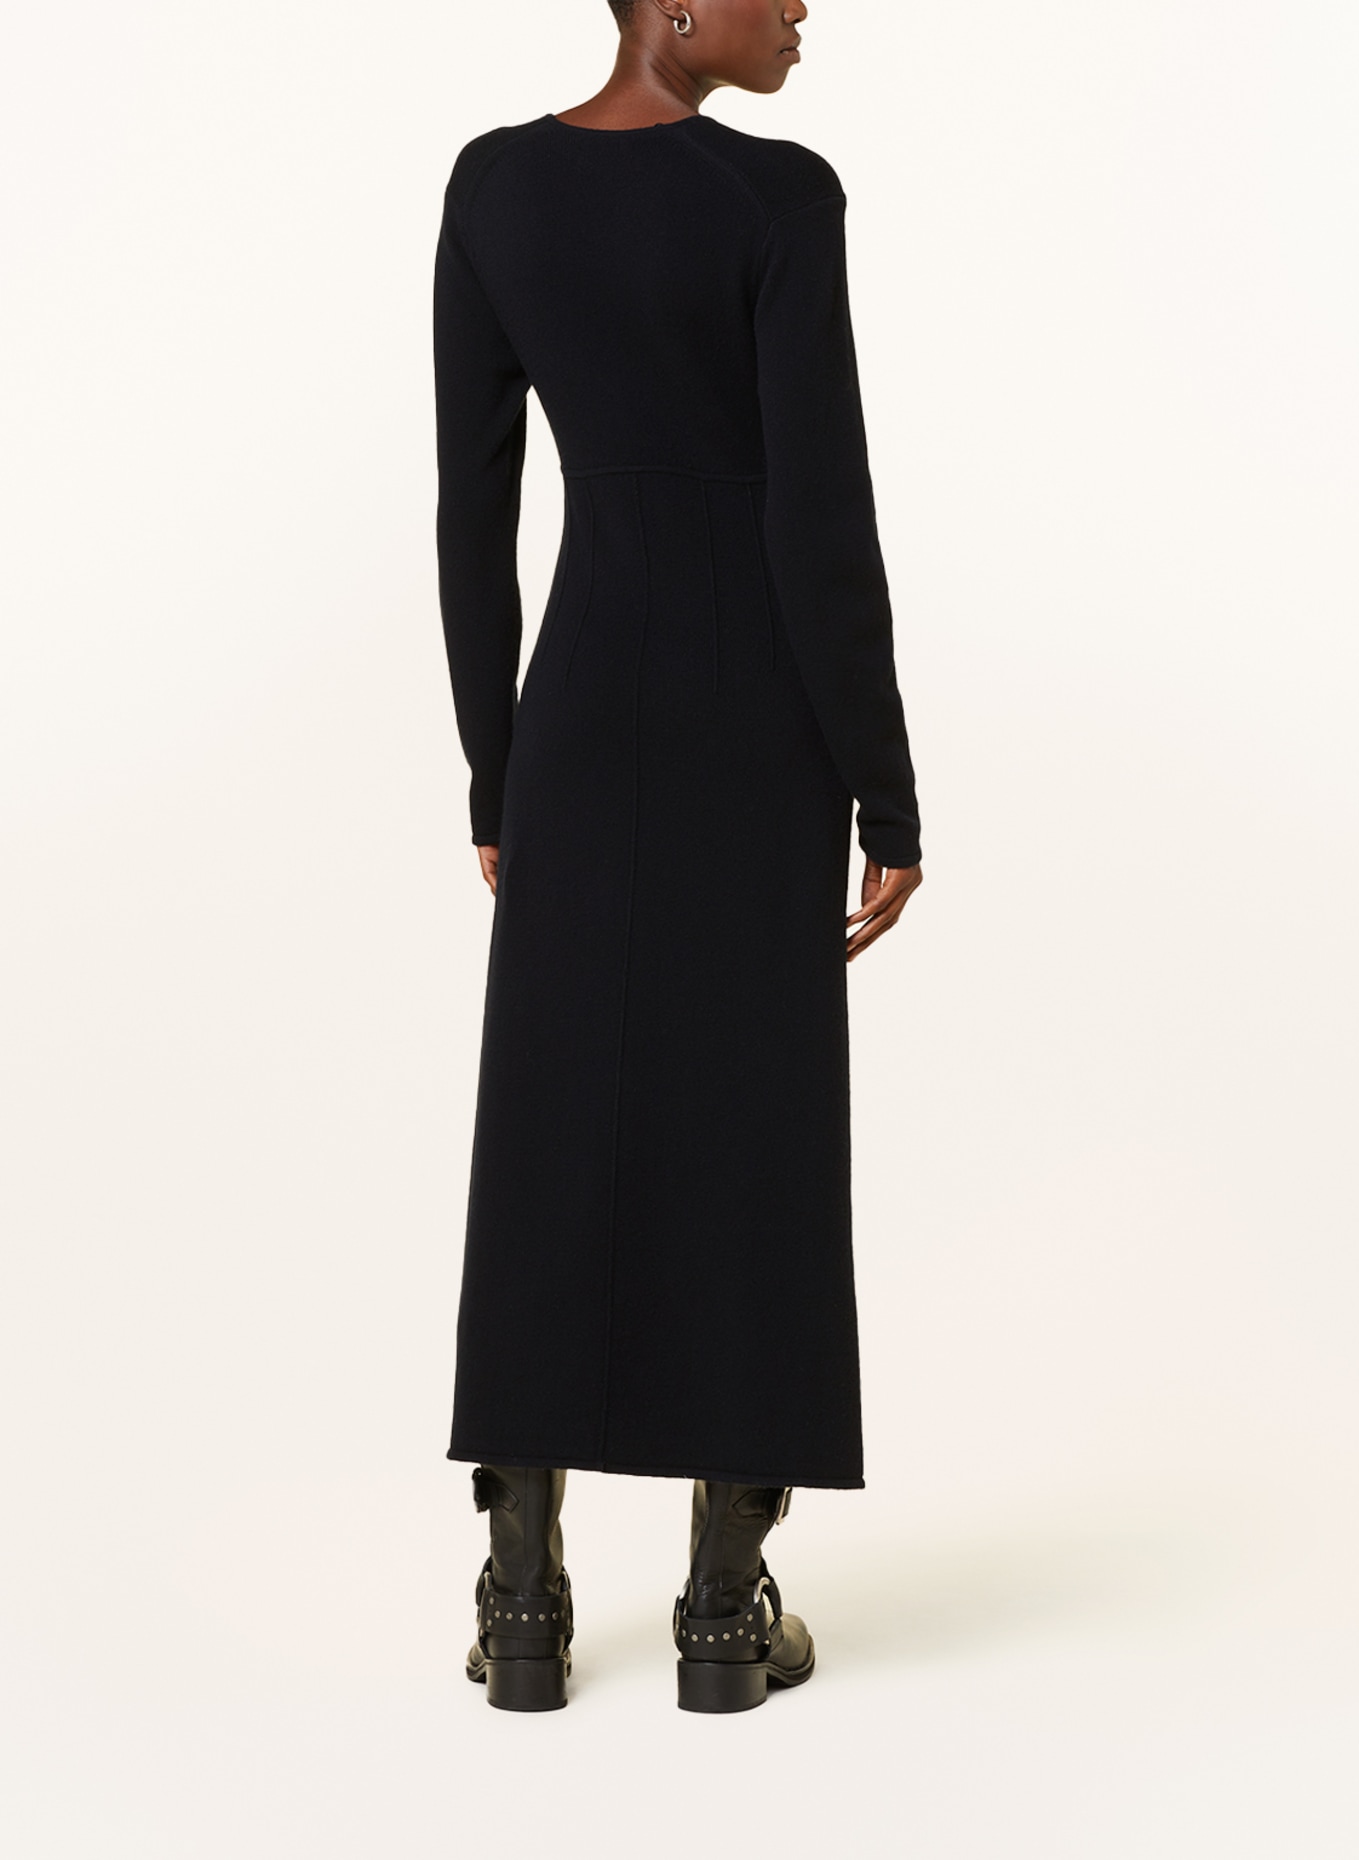 DOROTHEE SCHUMACHER Knit dress, Color: BLACK (Image 3)